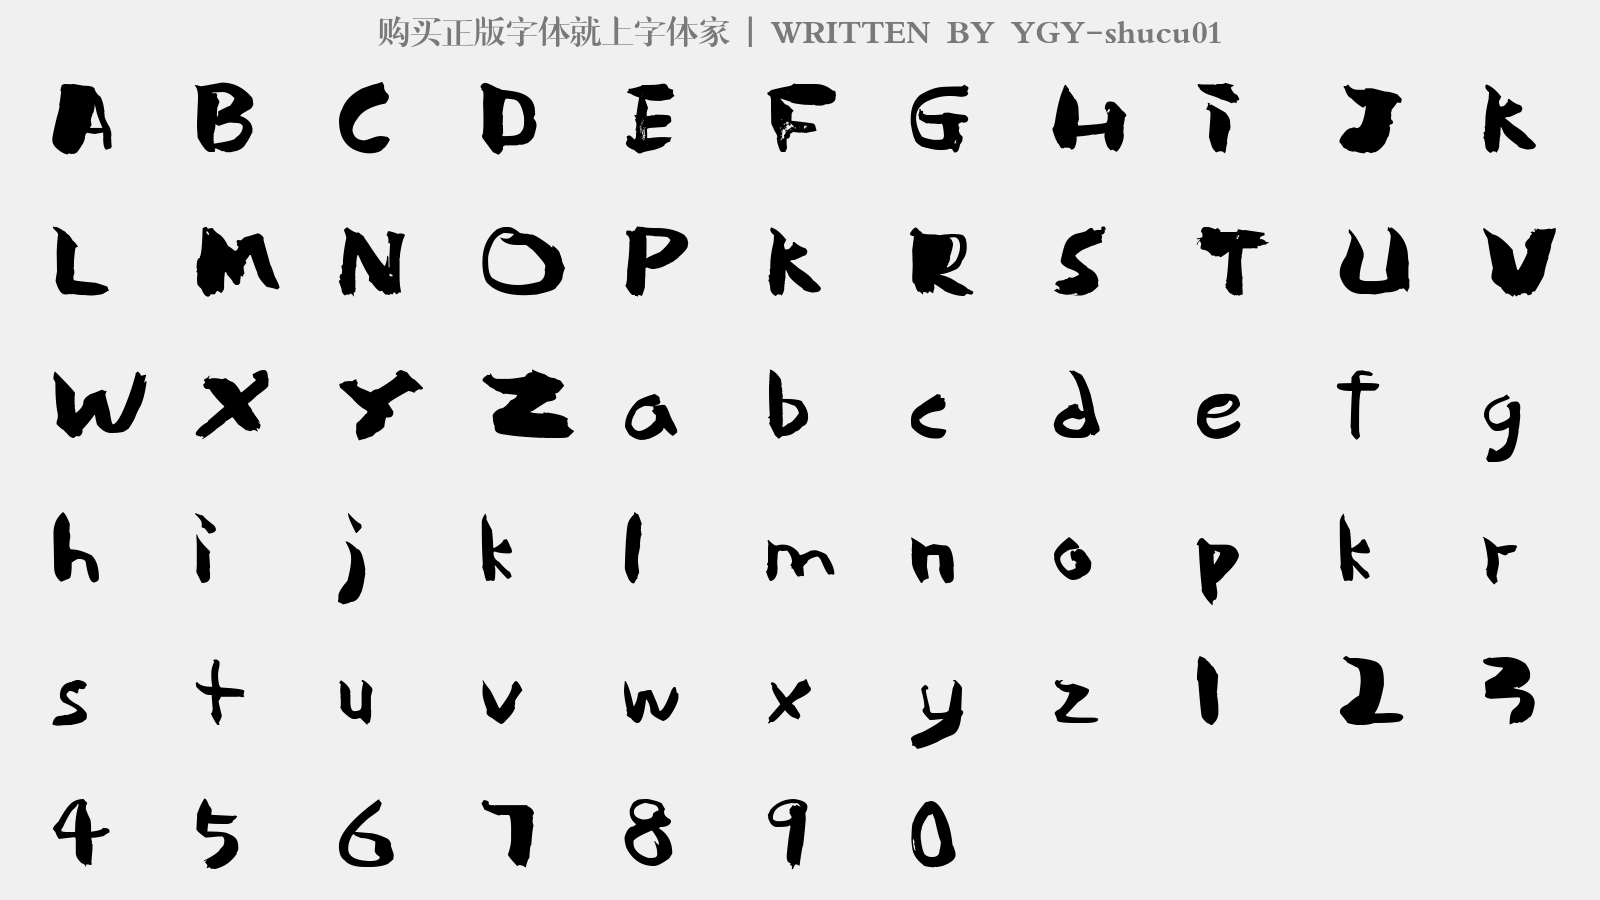 YGY-shucu01 - 大写字母/小写字母/数字